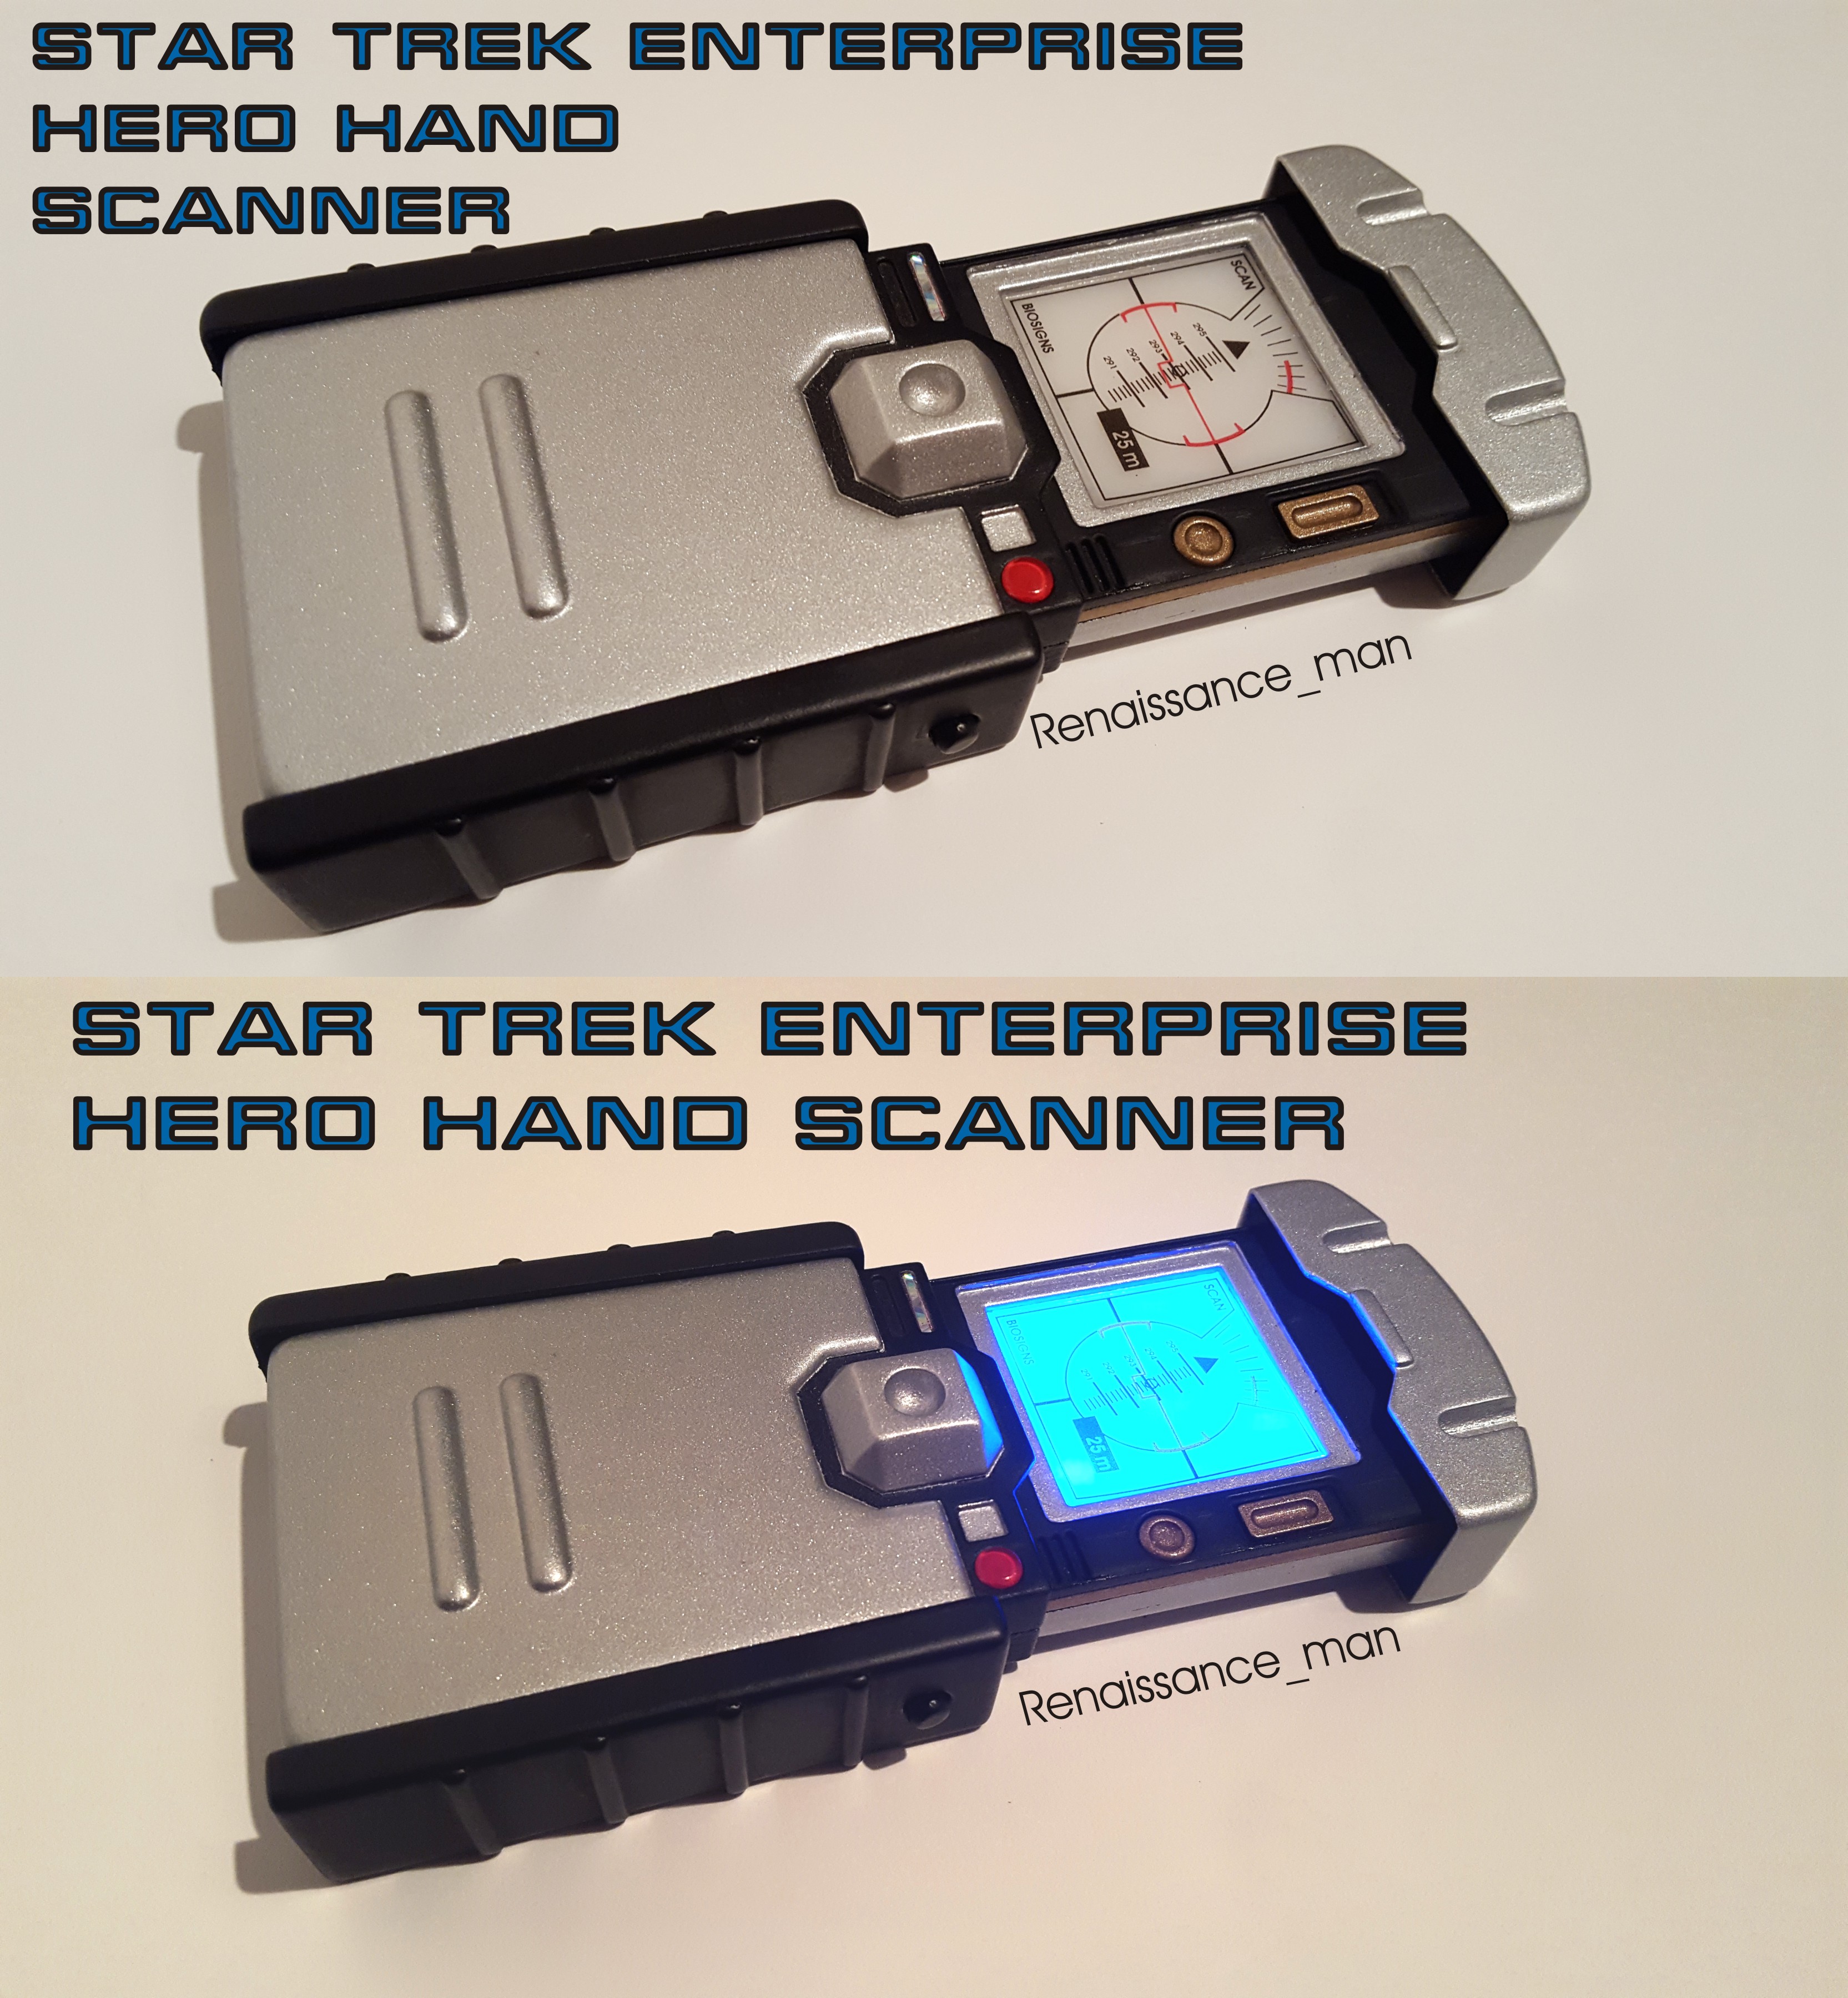 Enterprise-Hero-Hand-Scanner-1-1.jpg